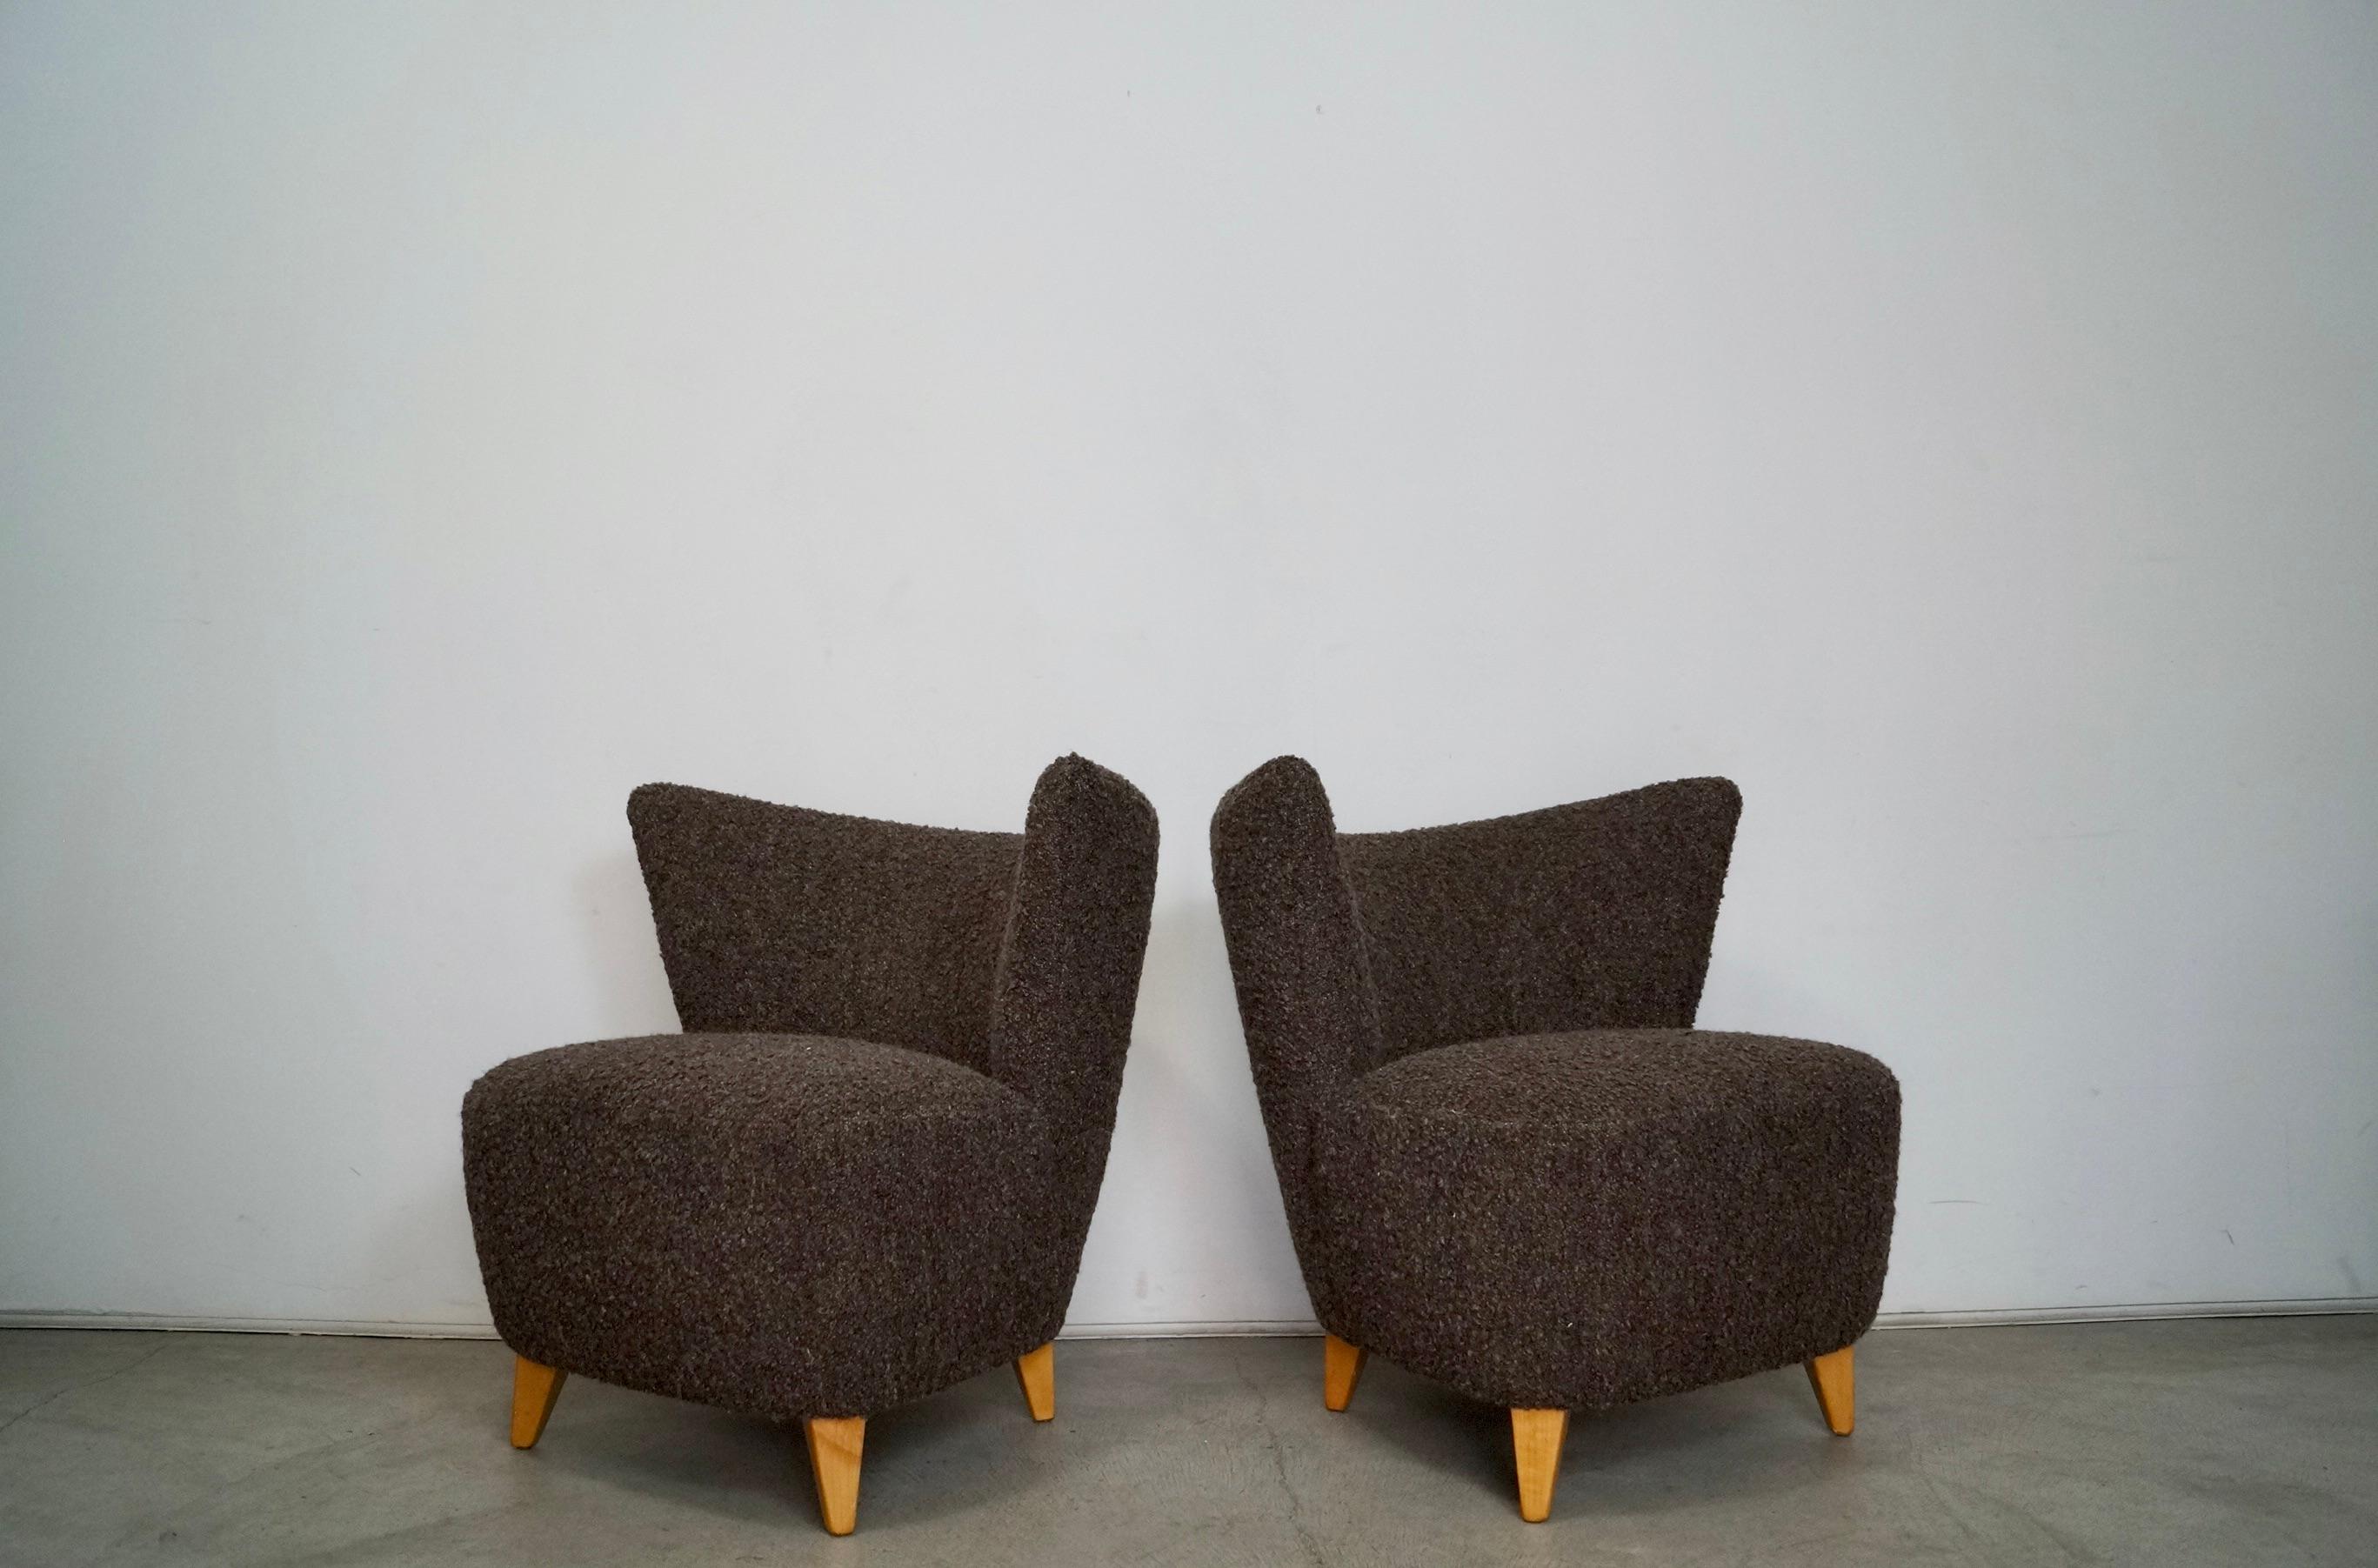 Paar originale Art Deco Midcentury Modern Lounge Chairs zu verkaufen. Sie wurden professionell restauriert und befinden sich jetzt in einem Ausstellungszustand. Die Beine sind aus massiver Birke und wurden mit einer natürlichen Birkenoberfläche